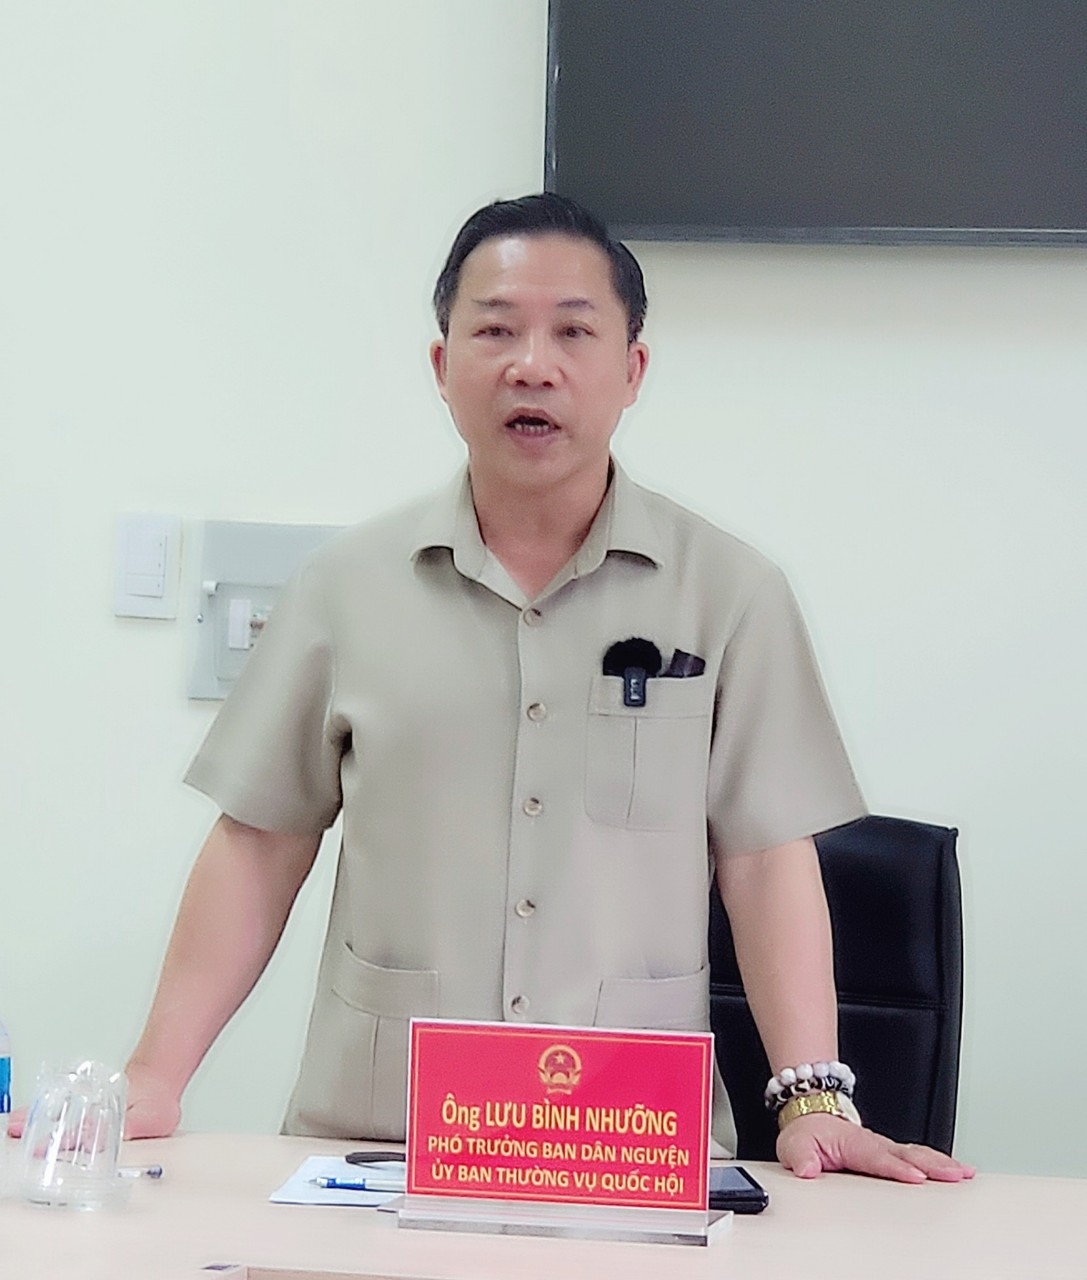 Phó trưởng Ban Dân nguyện của Quốc hội Lưu Bình Nhưỡng: Mong có phán quyết thấu lý, đạt tình, tránh oan sai